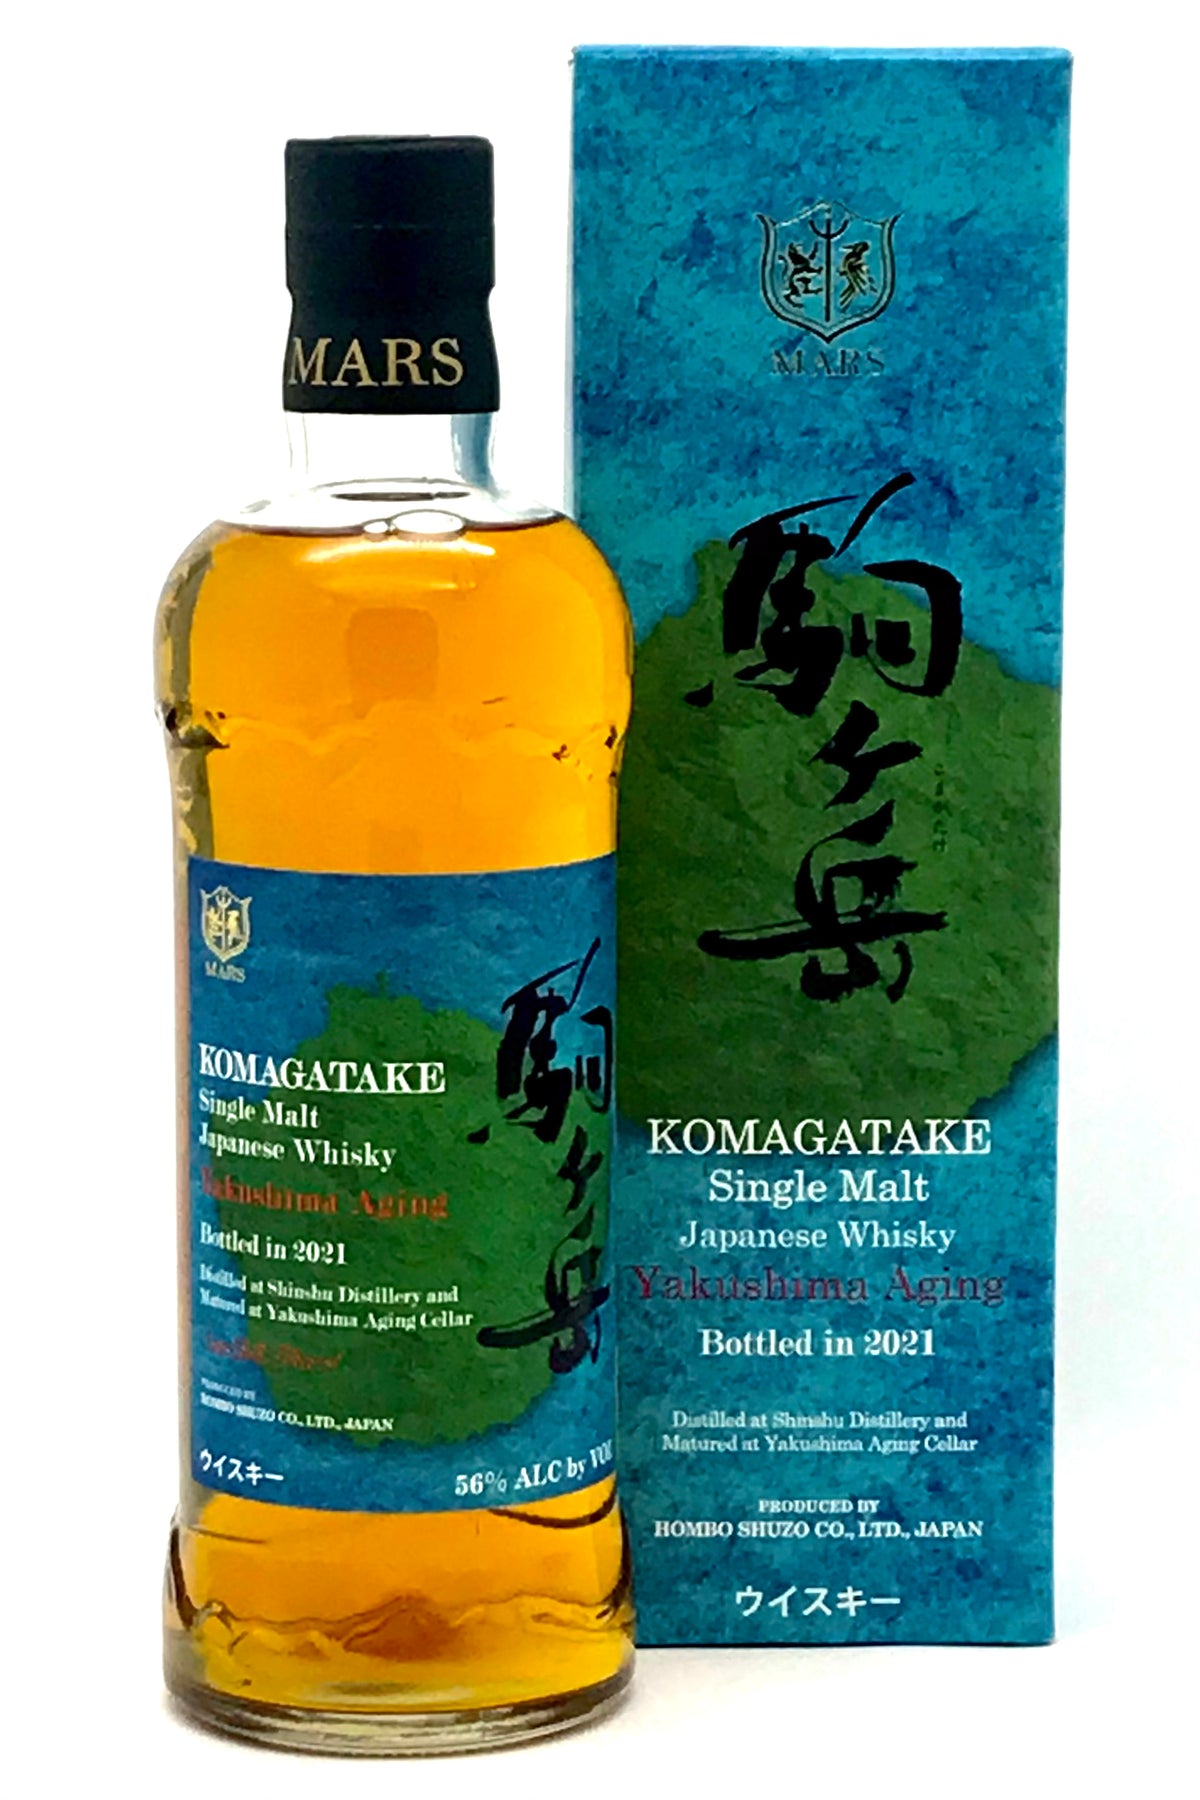 Mars Whisky Komagatake Yakushima Aging Vintage 2021 Single Malt Japanese Whisky